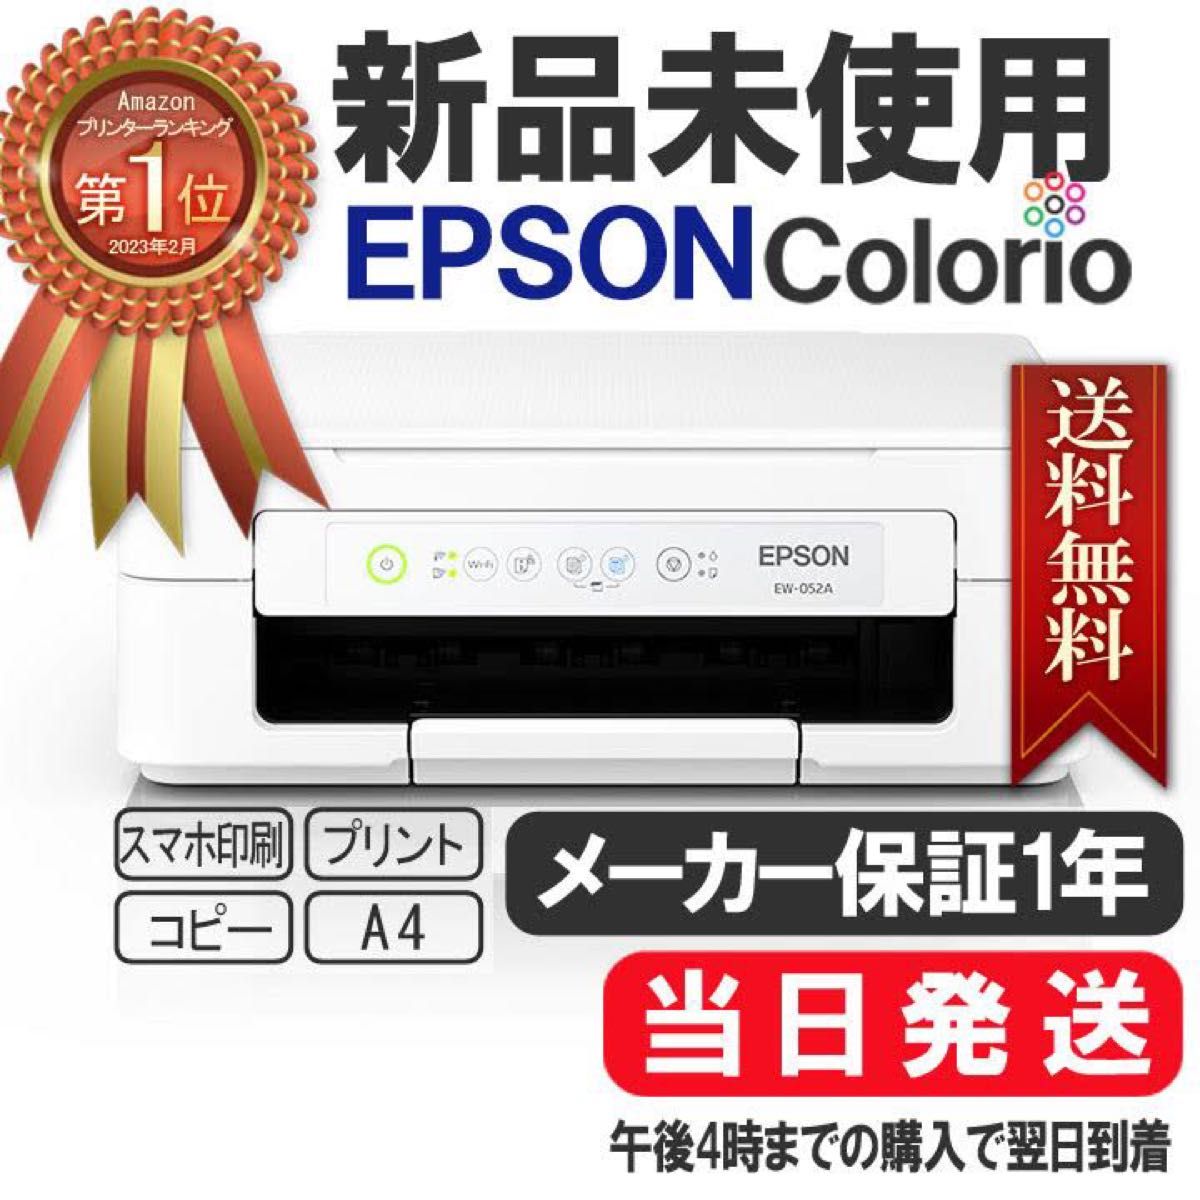 新品未使用 EPSON EW-052A プリンター USBケーブル付 - PC周辺機器